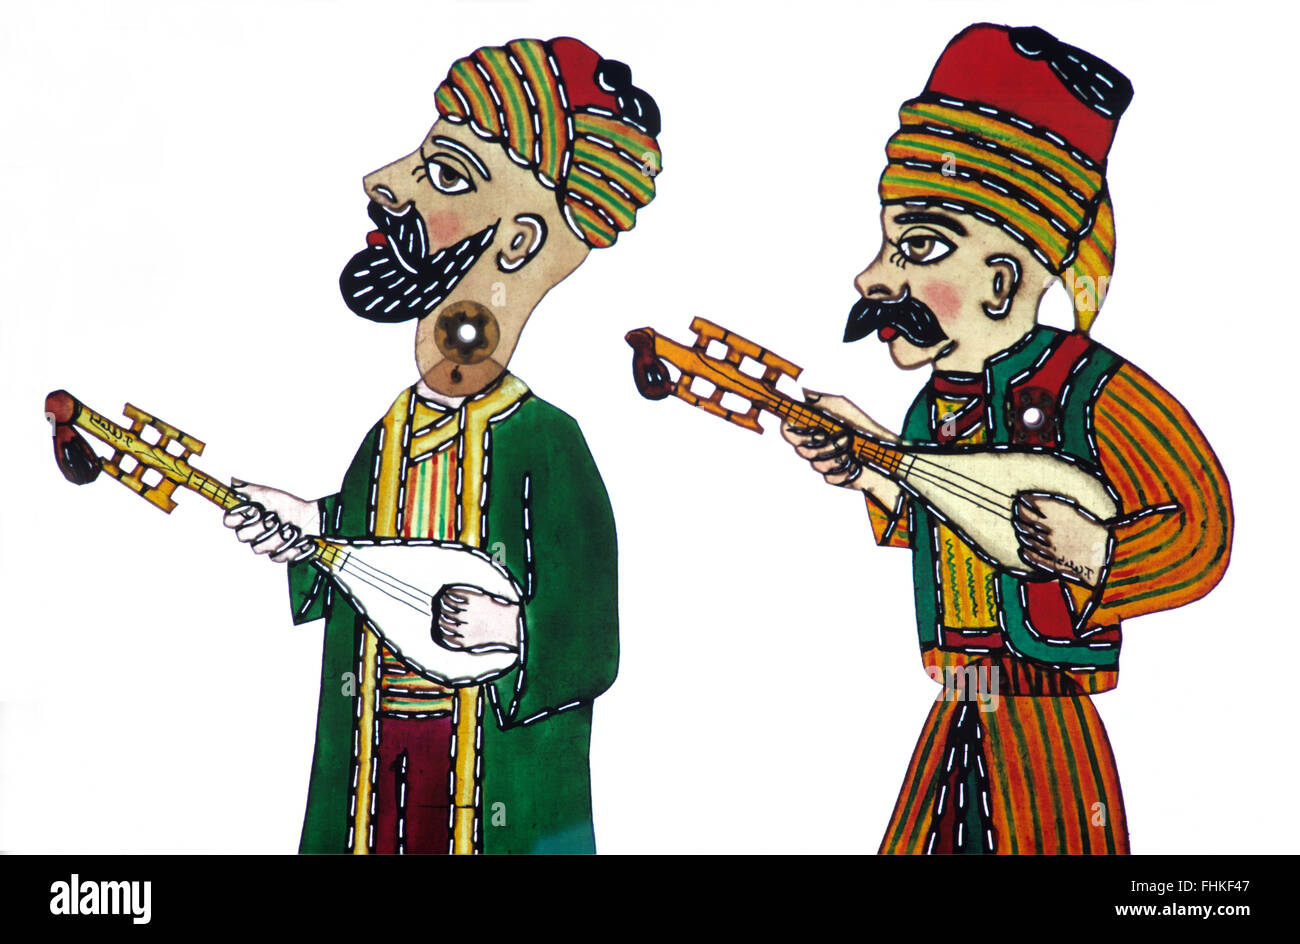 Des ombres chinoises de deux musiciens folk turc Saz Baglama ou instruments à cordes. Caractères de l'Karagöz et Hacivat ou théâtre d'Ombre Ombre chinoise Banque D'Images